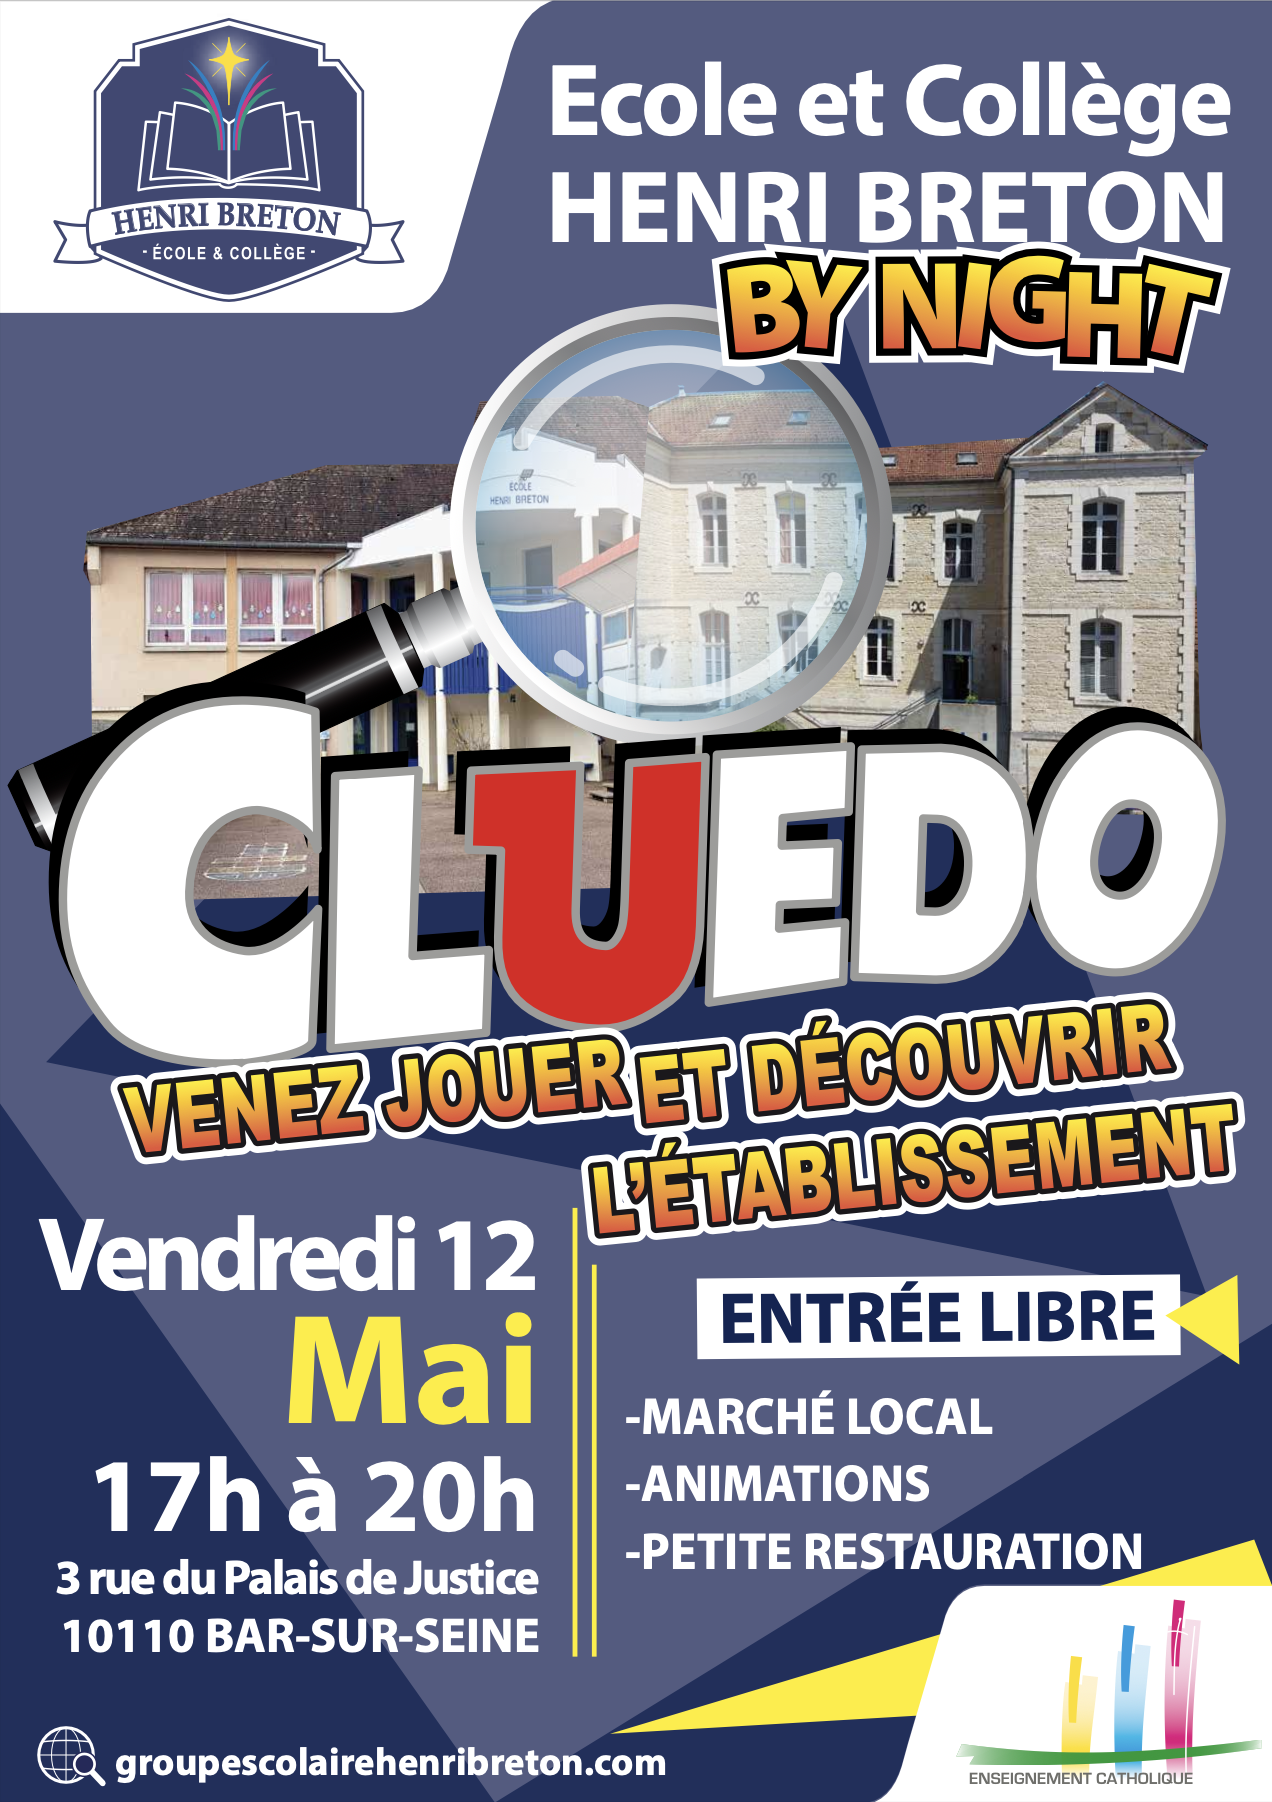 Cluedo by night à l&rsquo;école et collège Henri Breton à Bar-sur-seine !